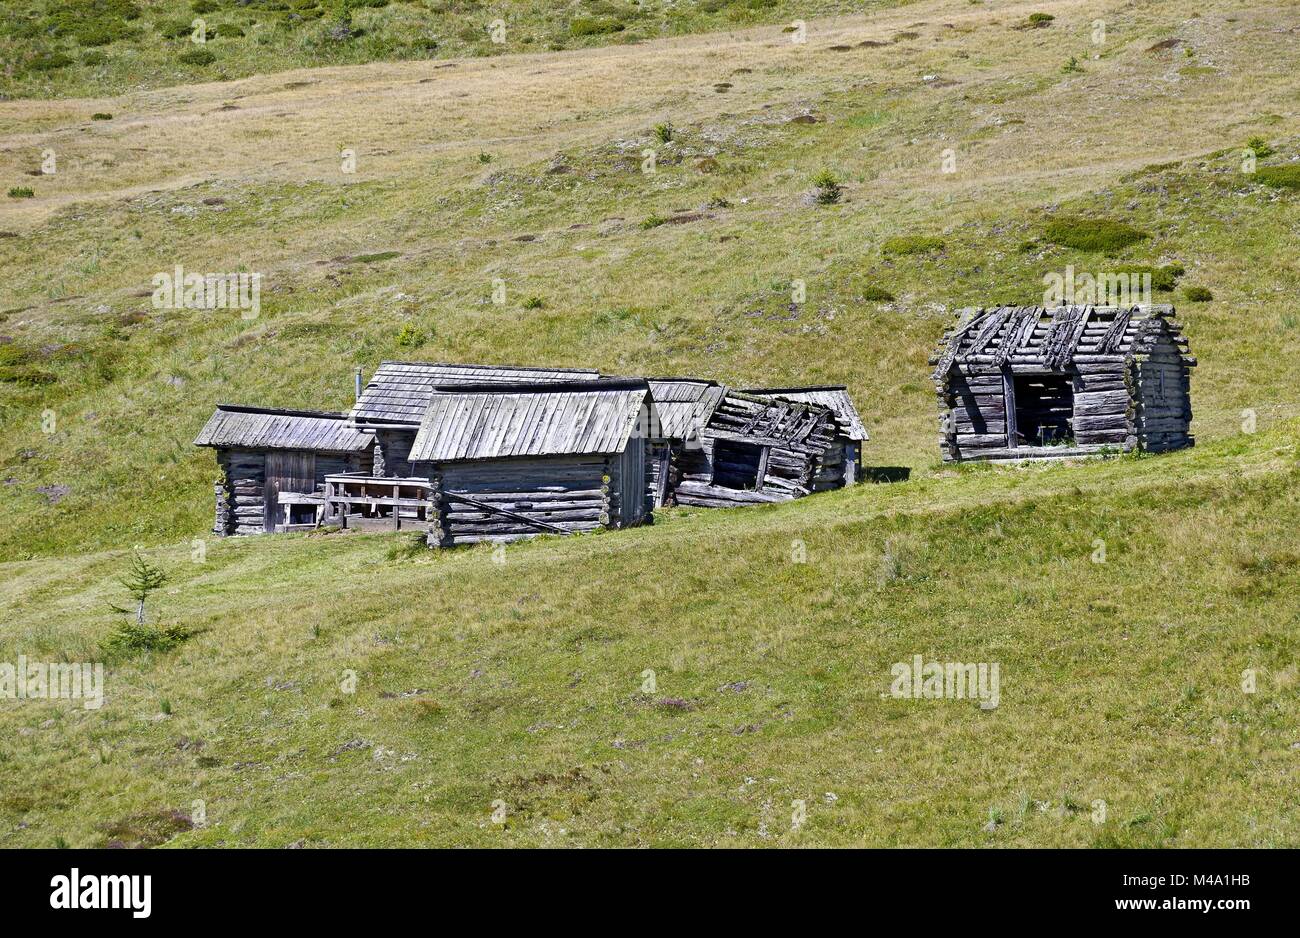 weather-beaten wooden cabins on a seasonal alpine pasture Stock Photo